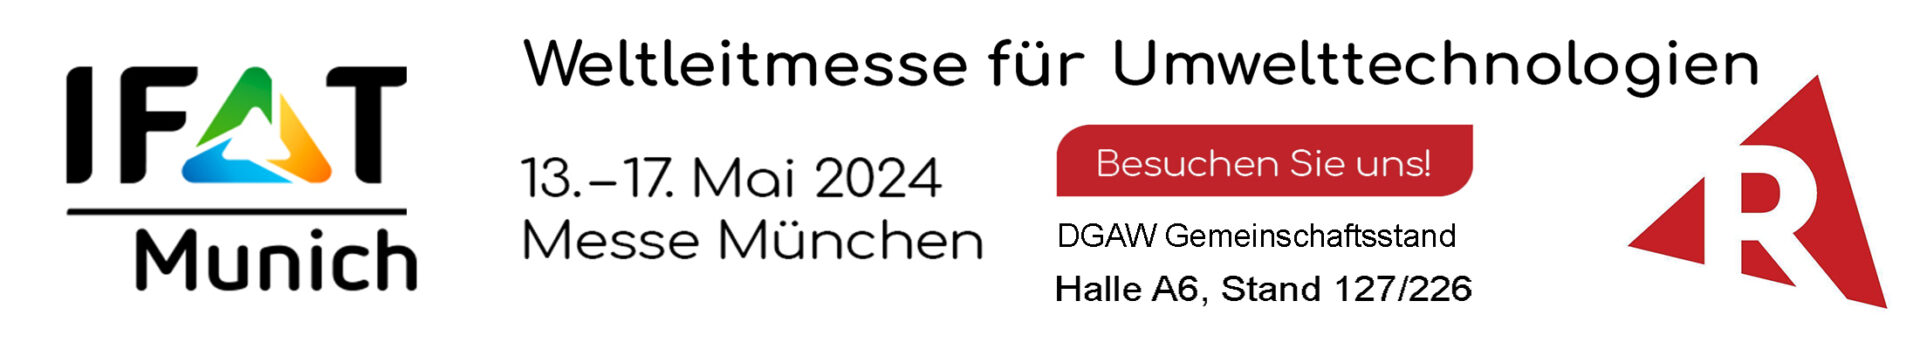 REIKAN auf der IFAT 2024 in München